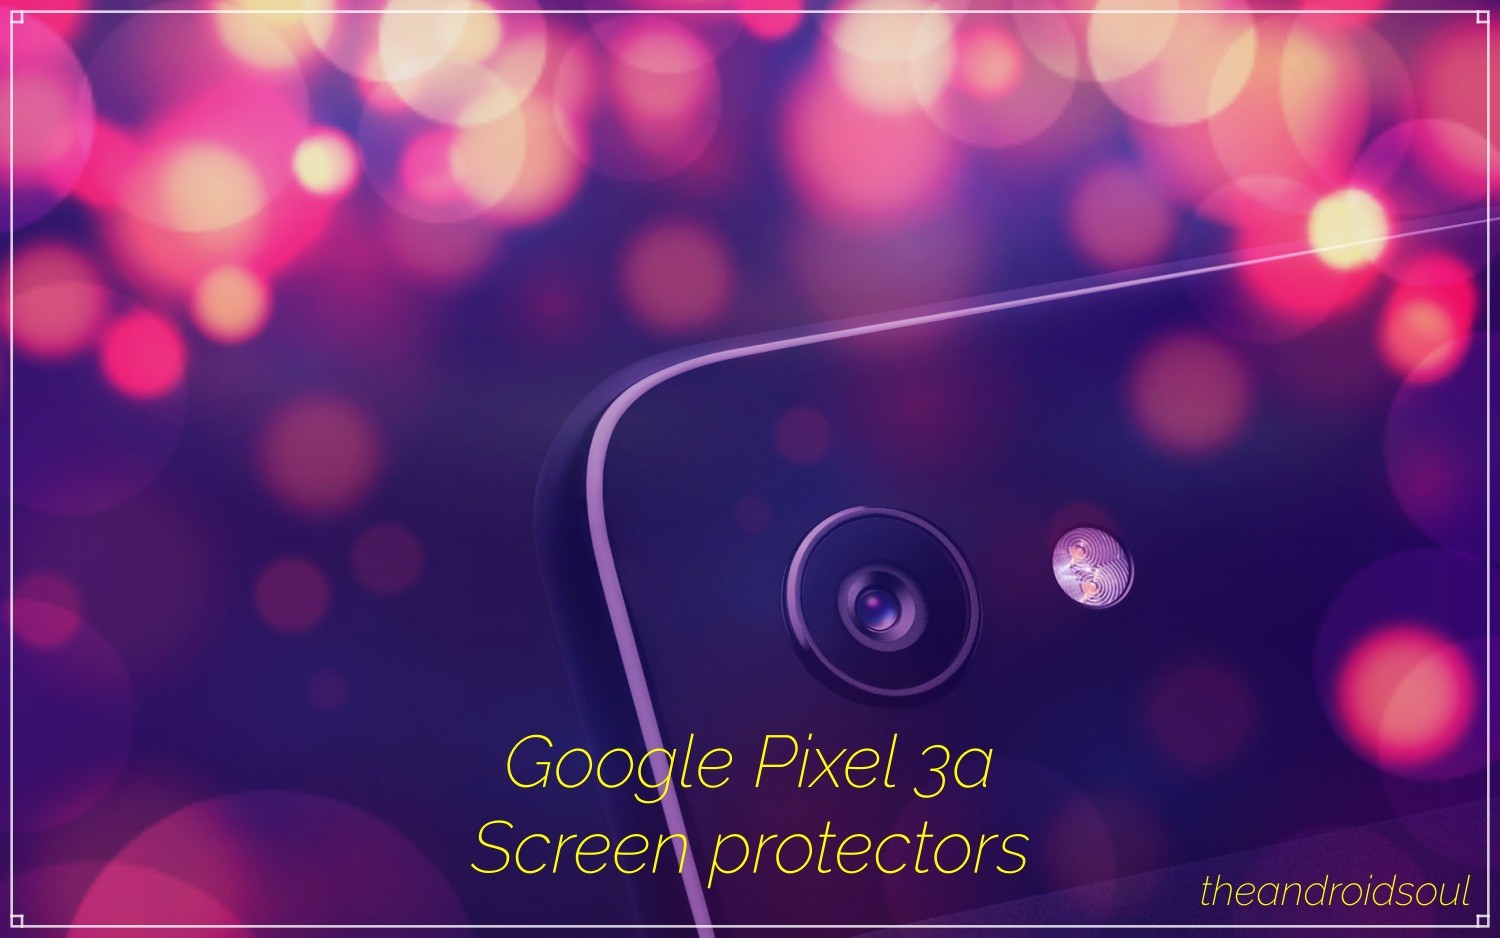 Google Pixel 3a screen protectors